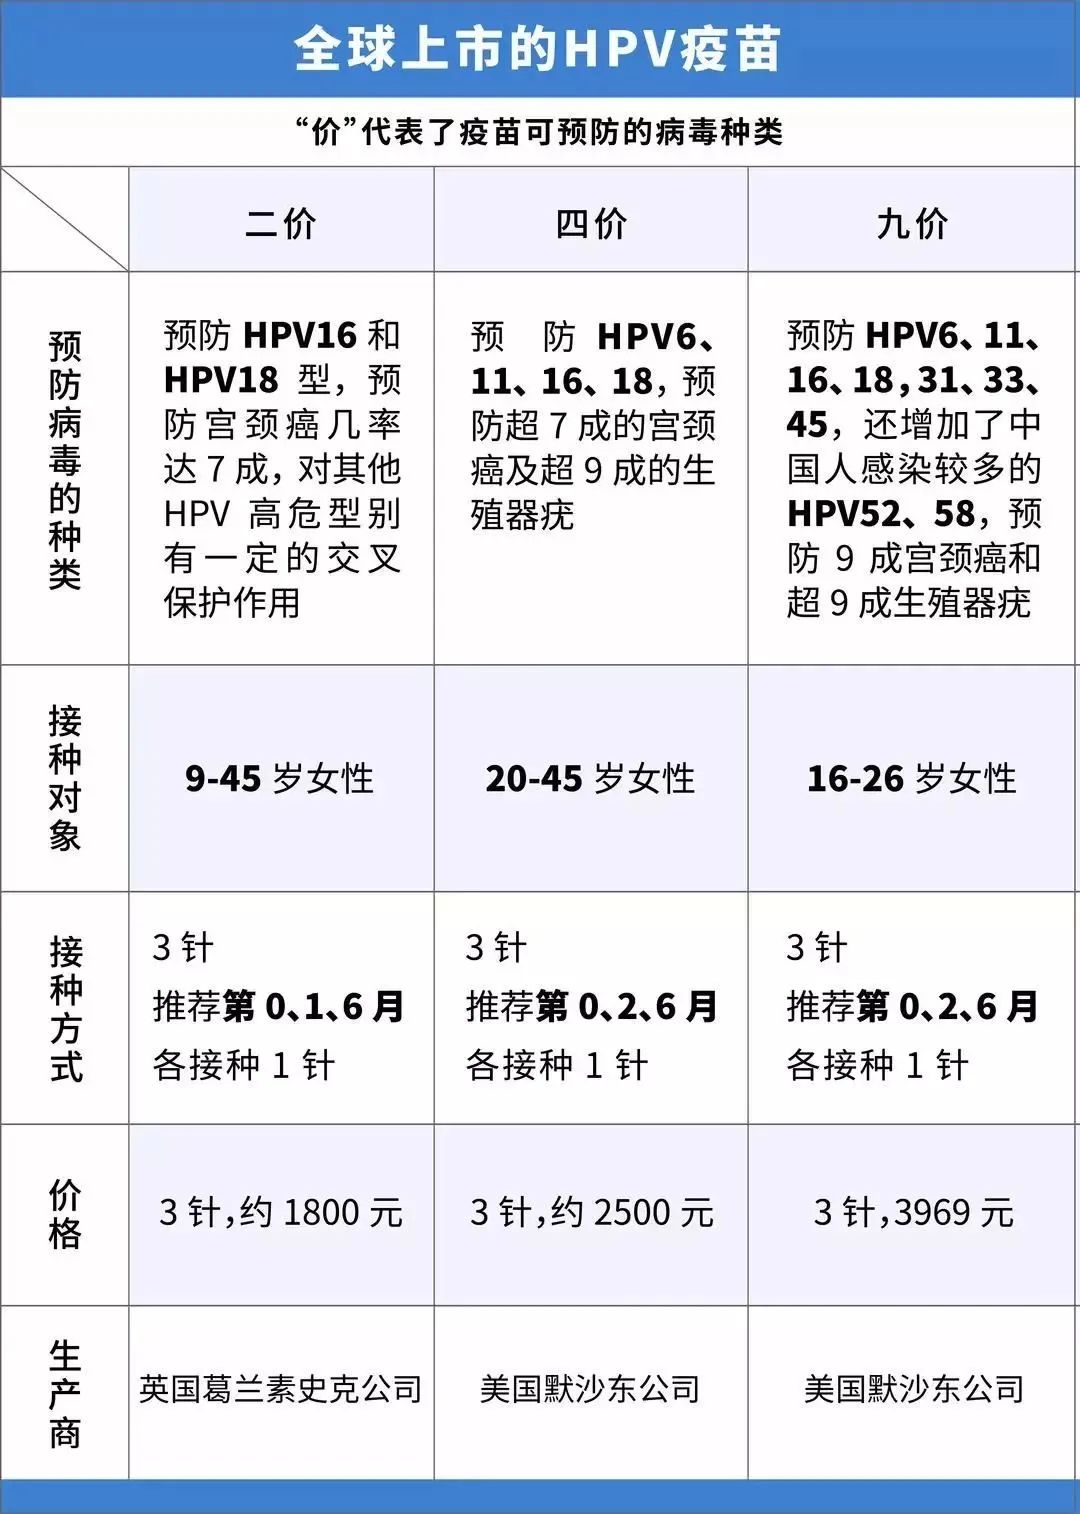 "啊啊啊赶在超龄前摇中!"5月深圳九价hpv疫苗摇号,4912个小姐姐中了!